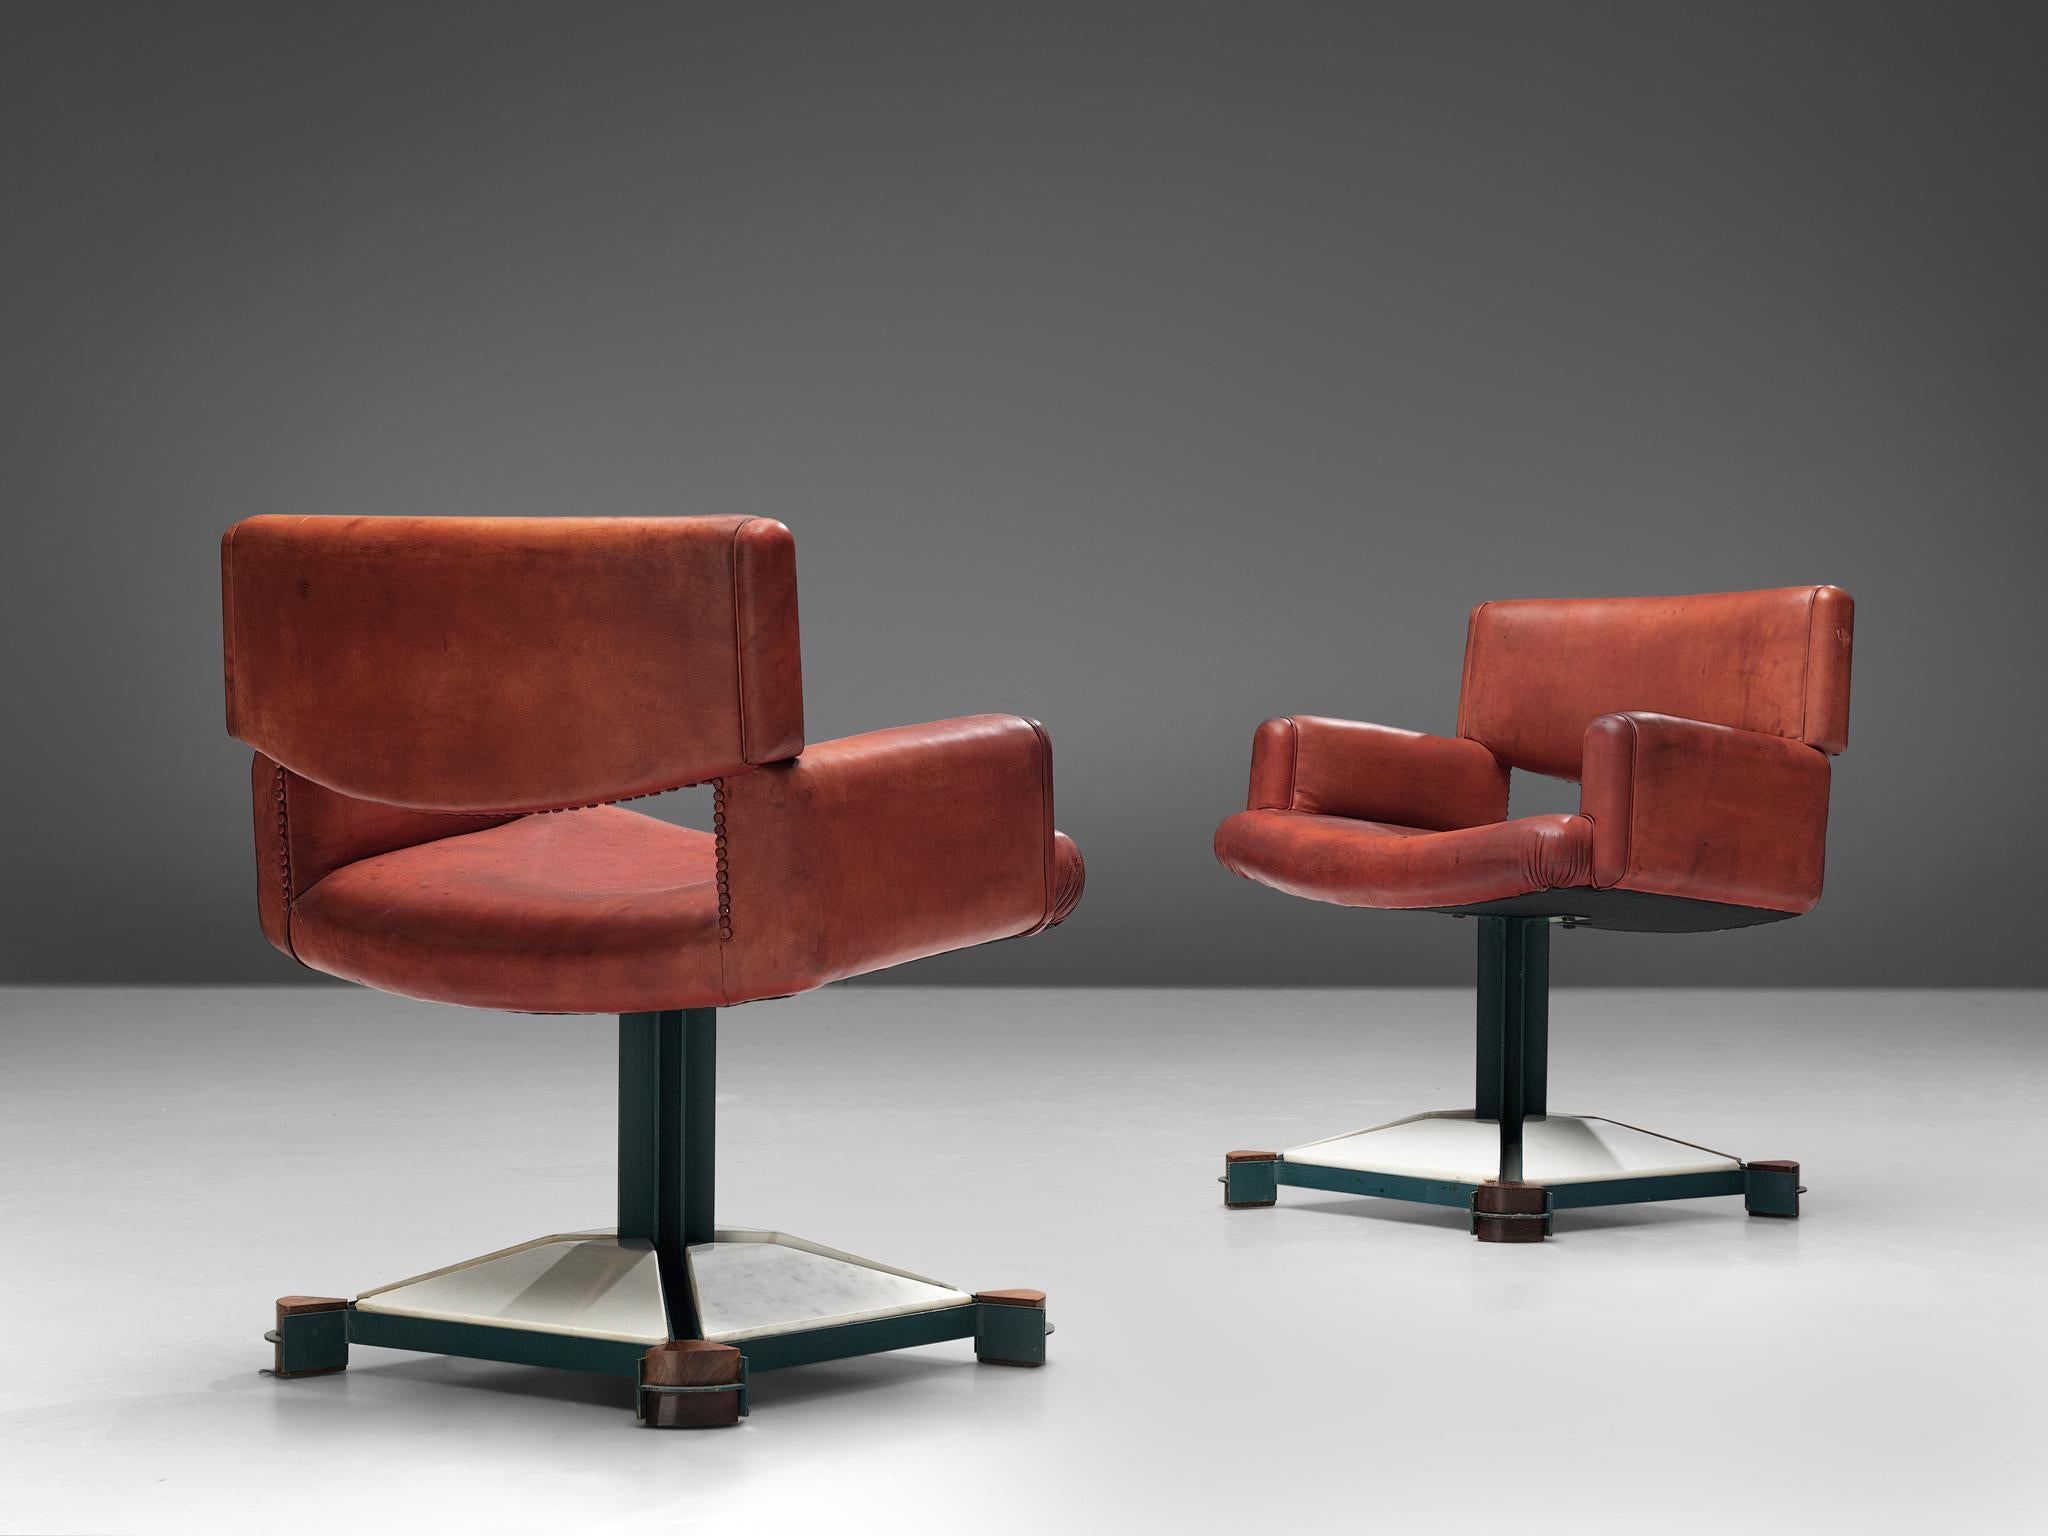 Italienisches Sesselpaar, Marmor, Metall, Leder, Holz, Italien, 1970er Jahre

Auffällige Sessel mit toller Materialkombination und wunderbaren Formen. Dem Designer dieser wunderbaren Stühle ist es gelungen, vier MATERIALIEN zu einem aufregenden